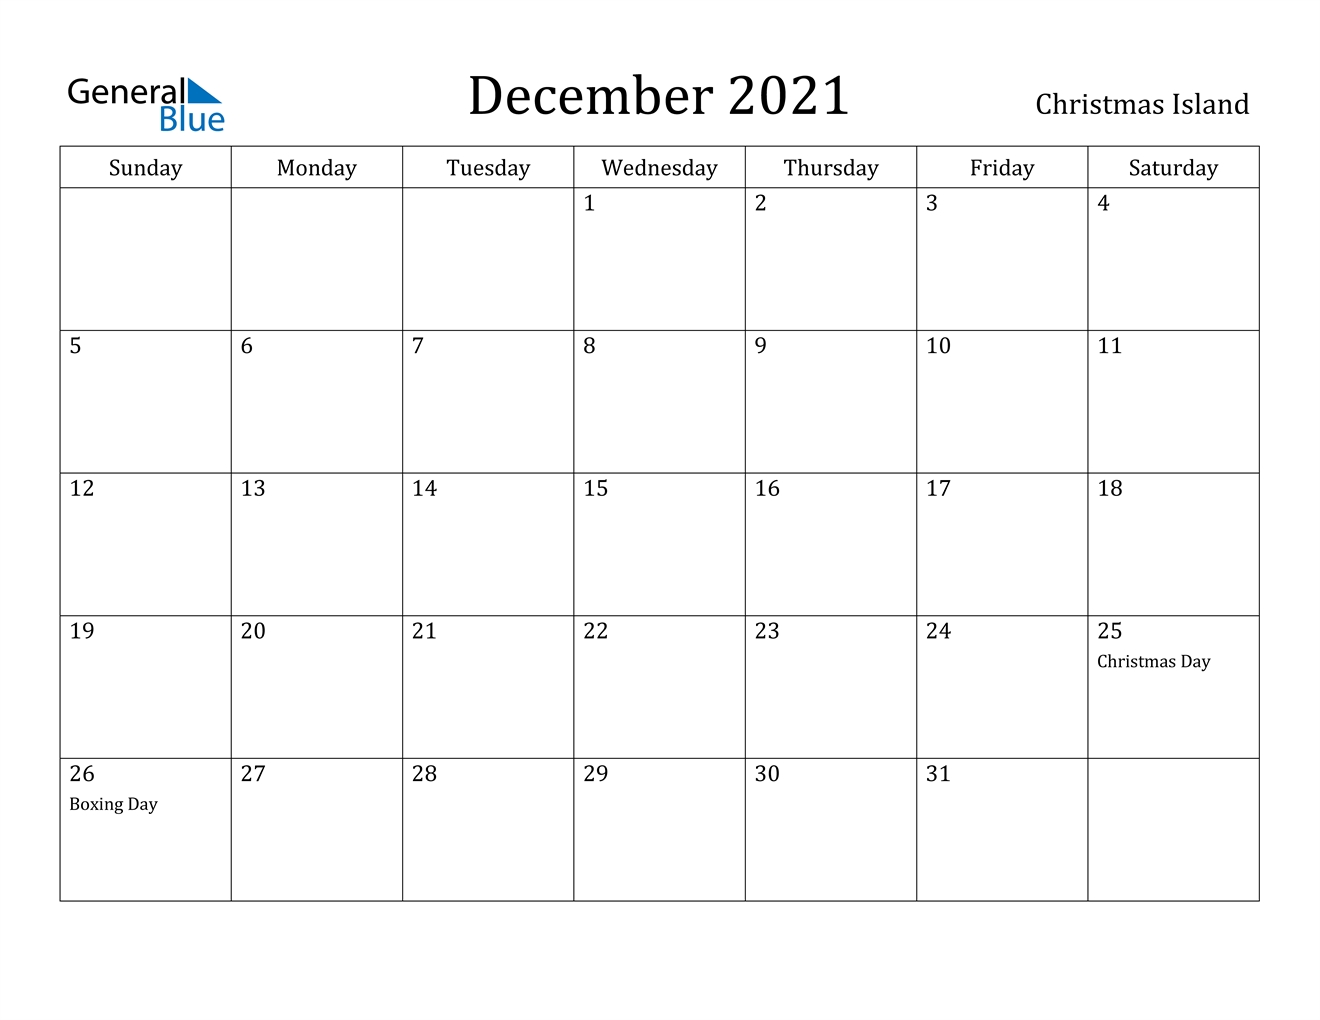 Collect 2021 Calendar Printable December Christmas